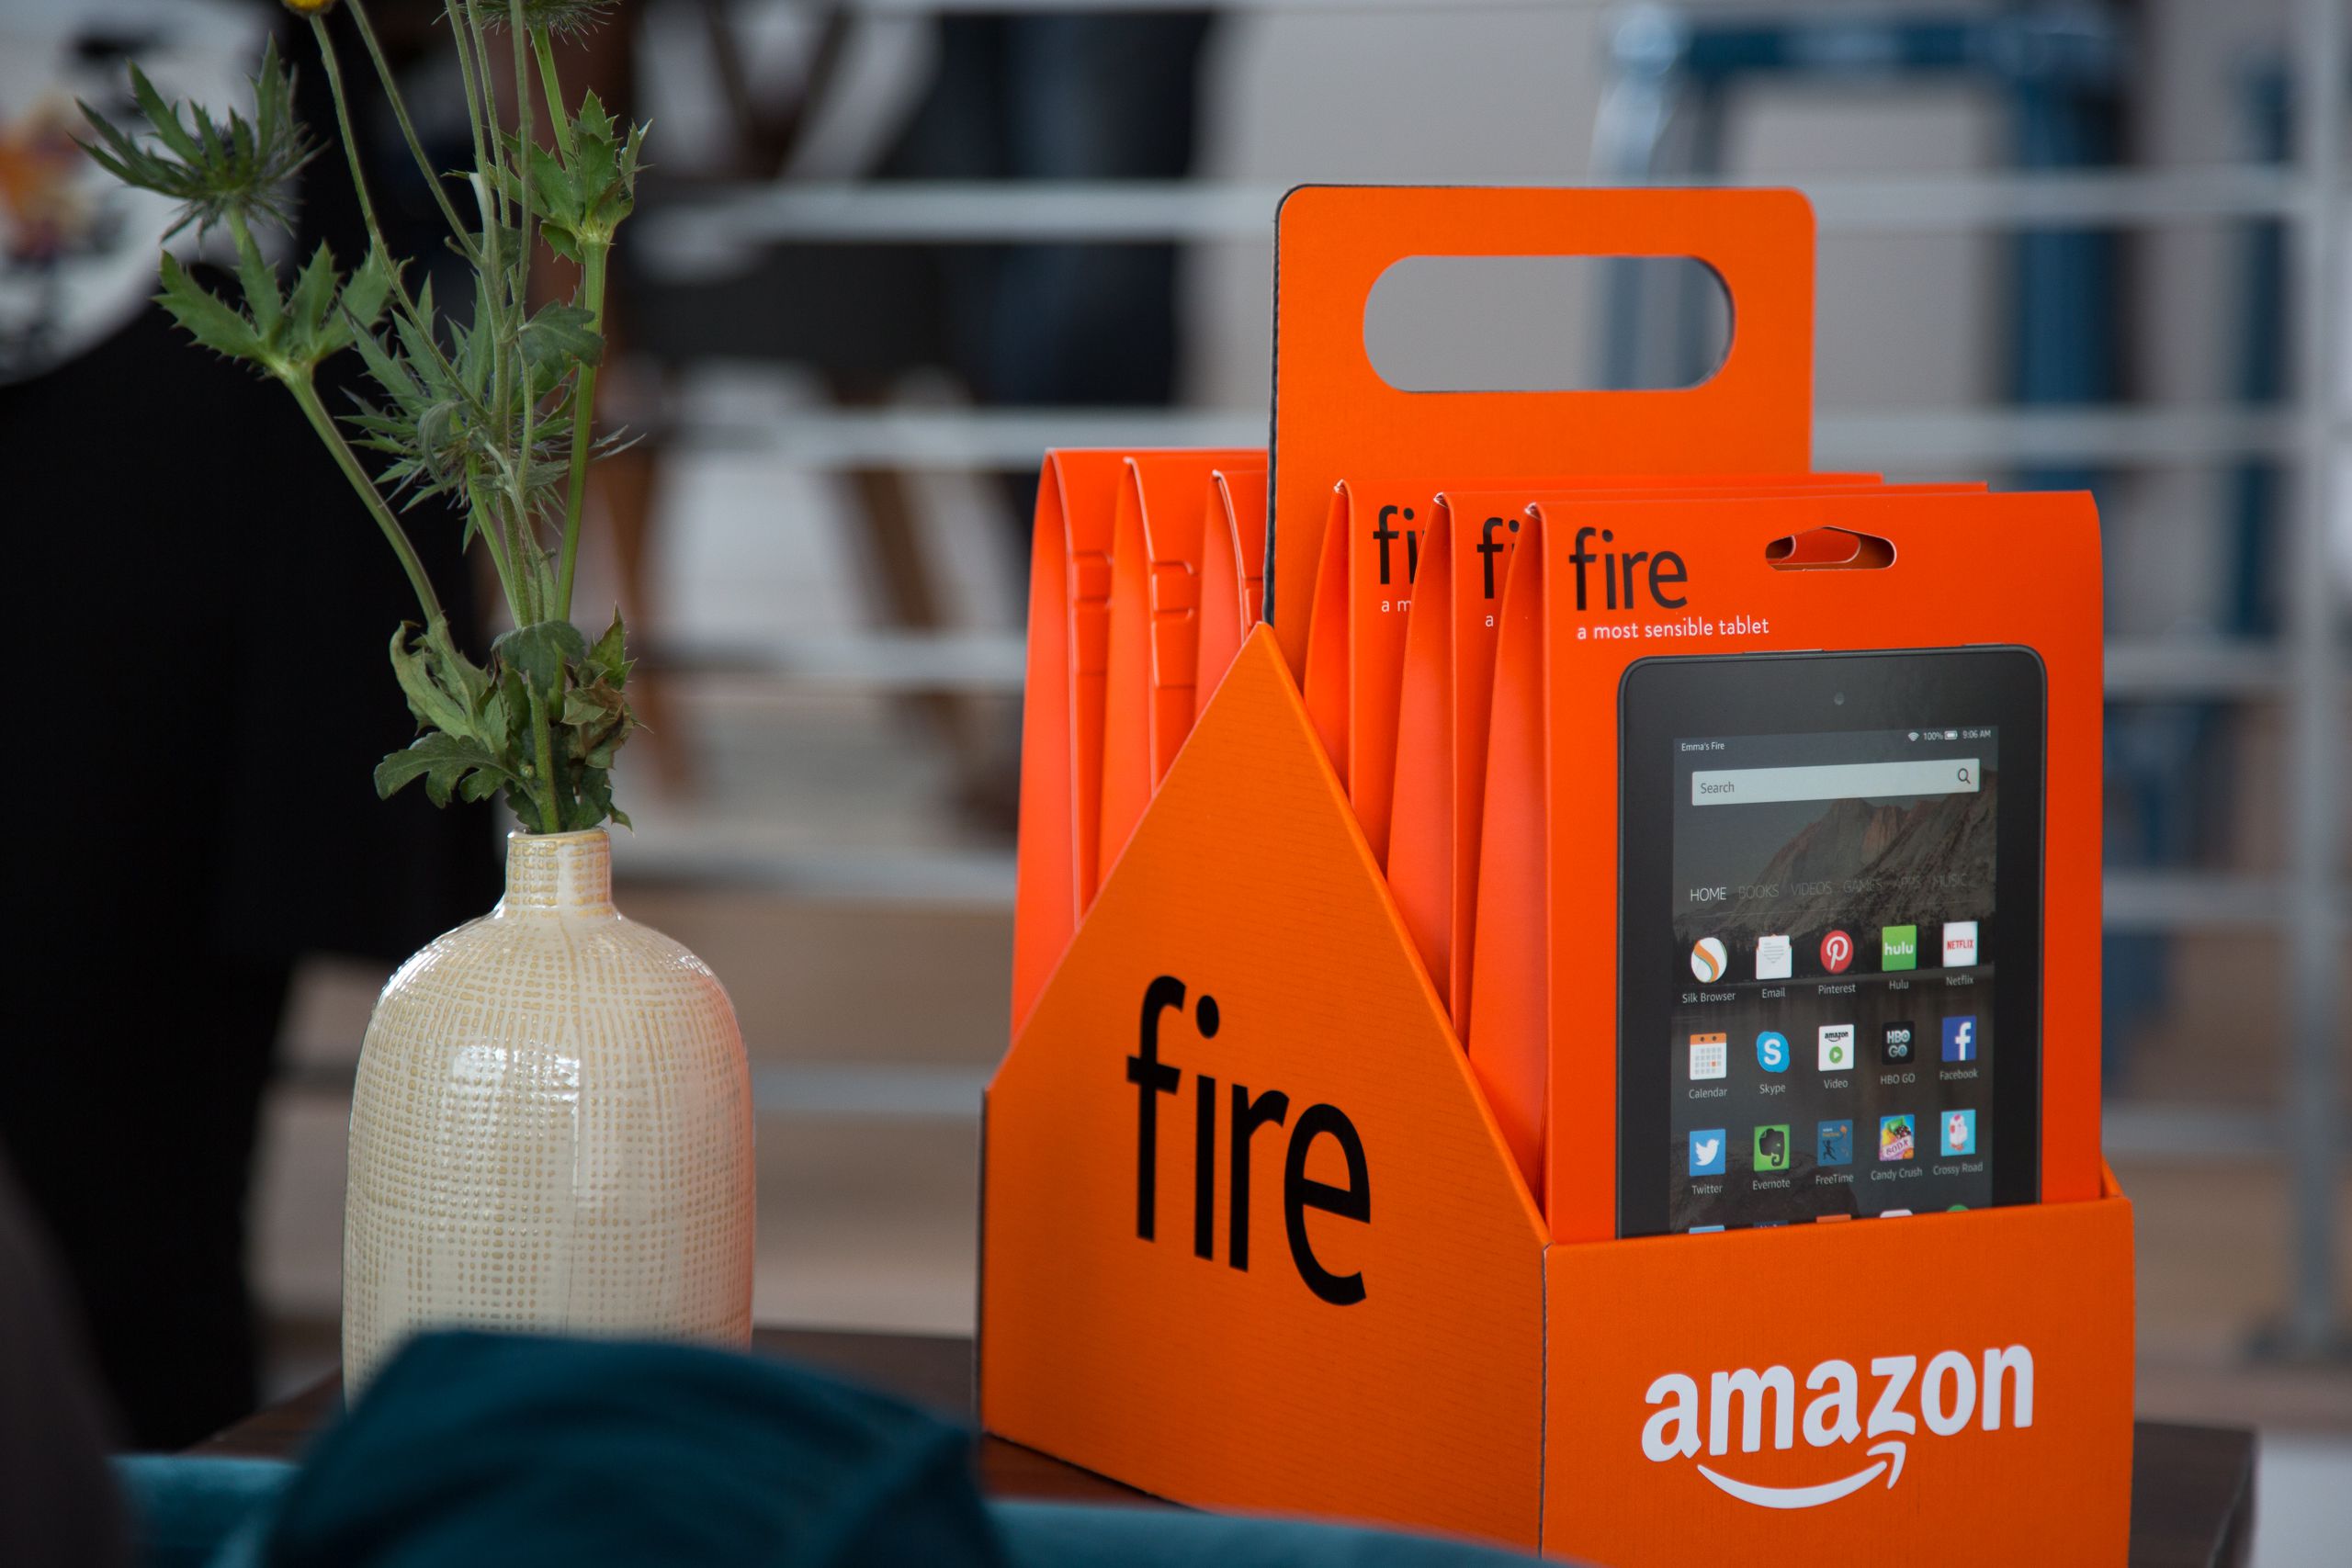 amazon presenta nueva tableta de 7 pulgadas por solo 50 dolares 20150916 fire tablets tv 9